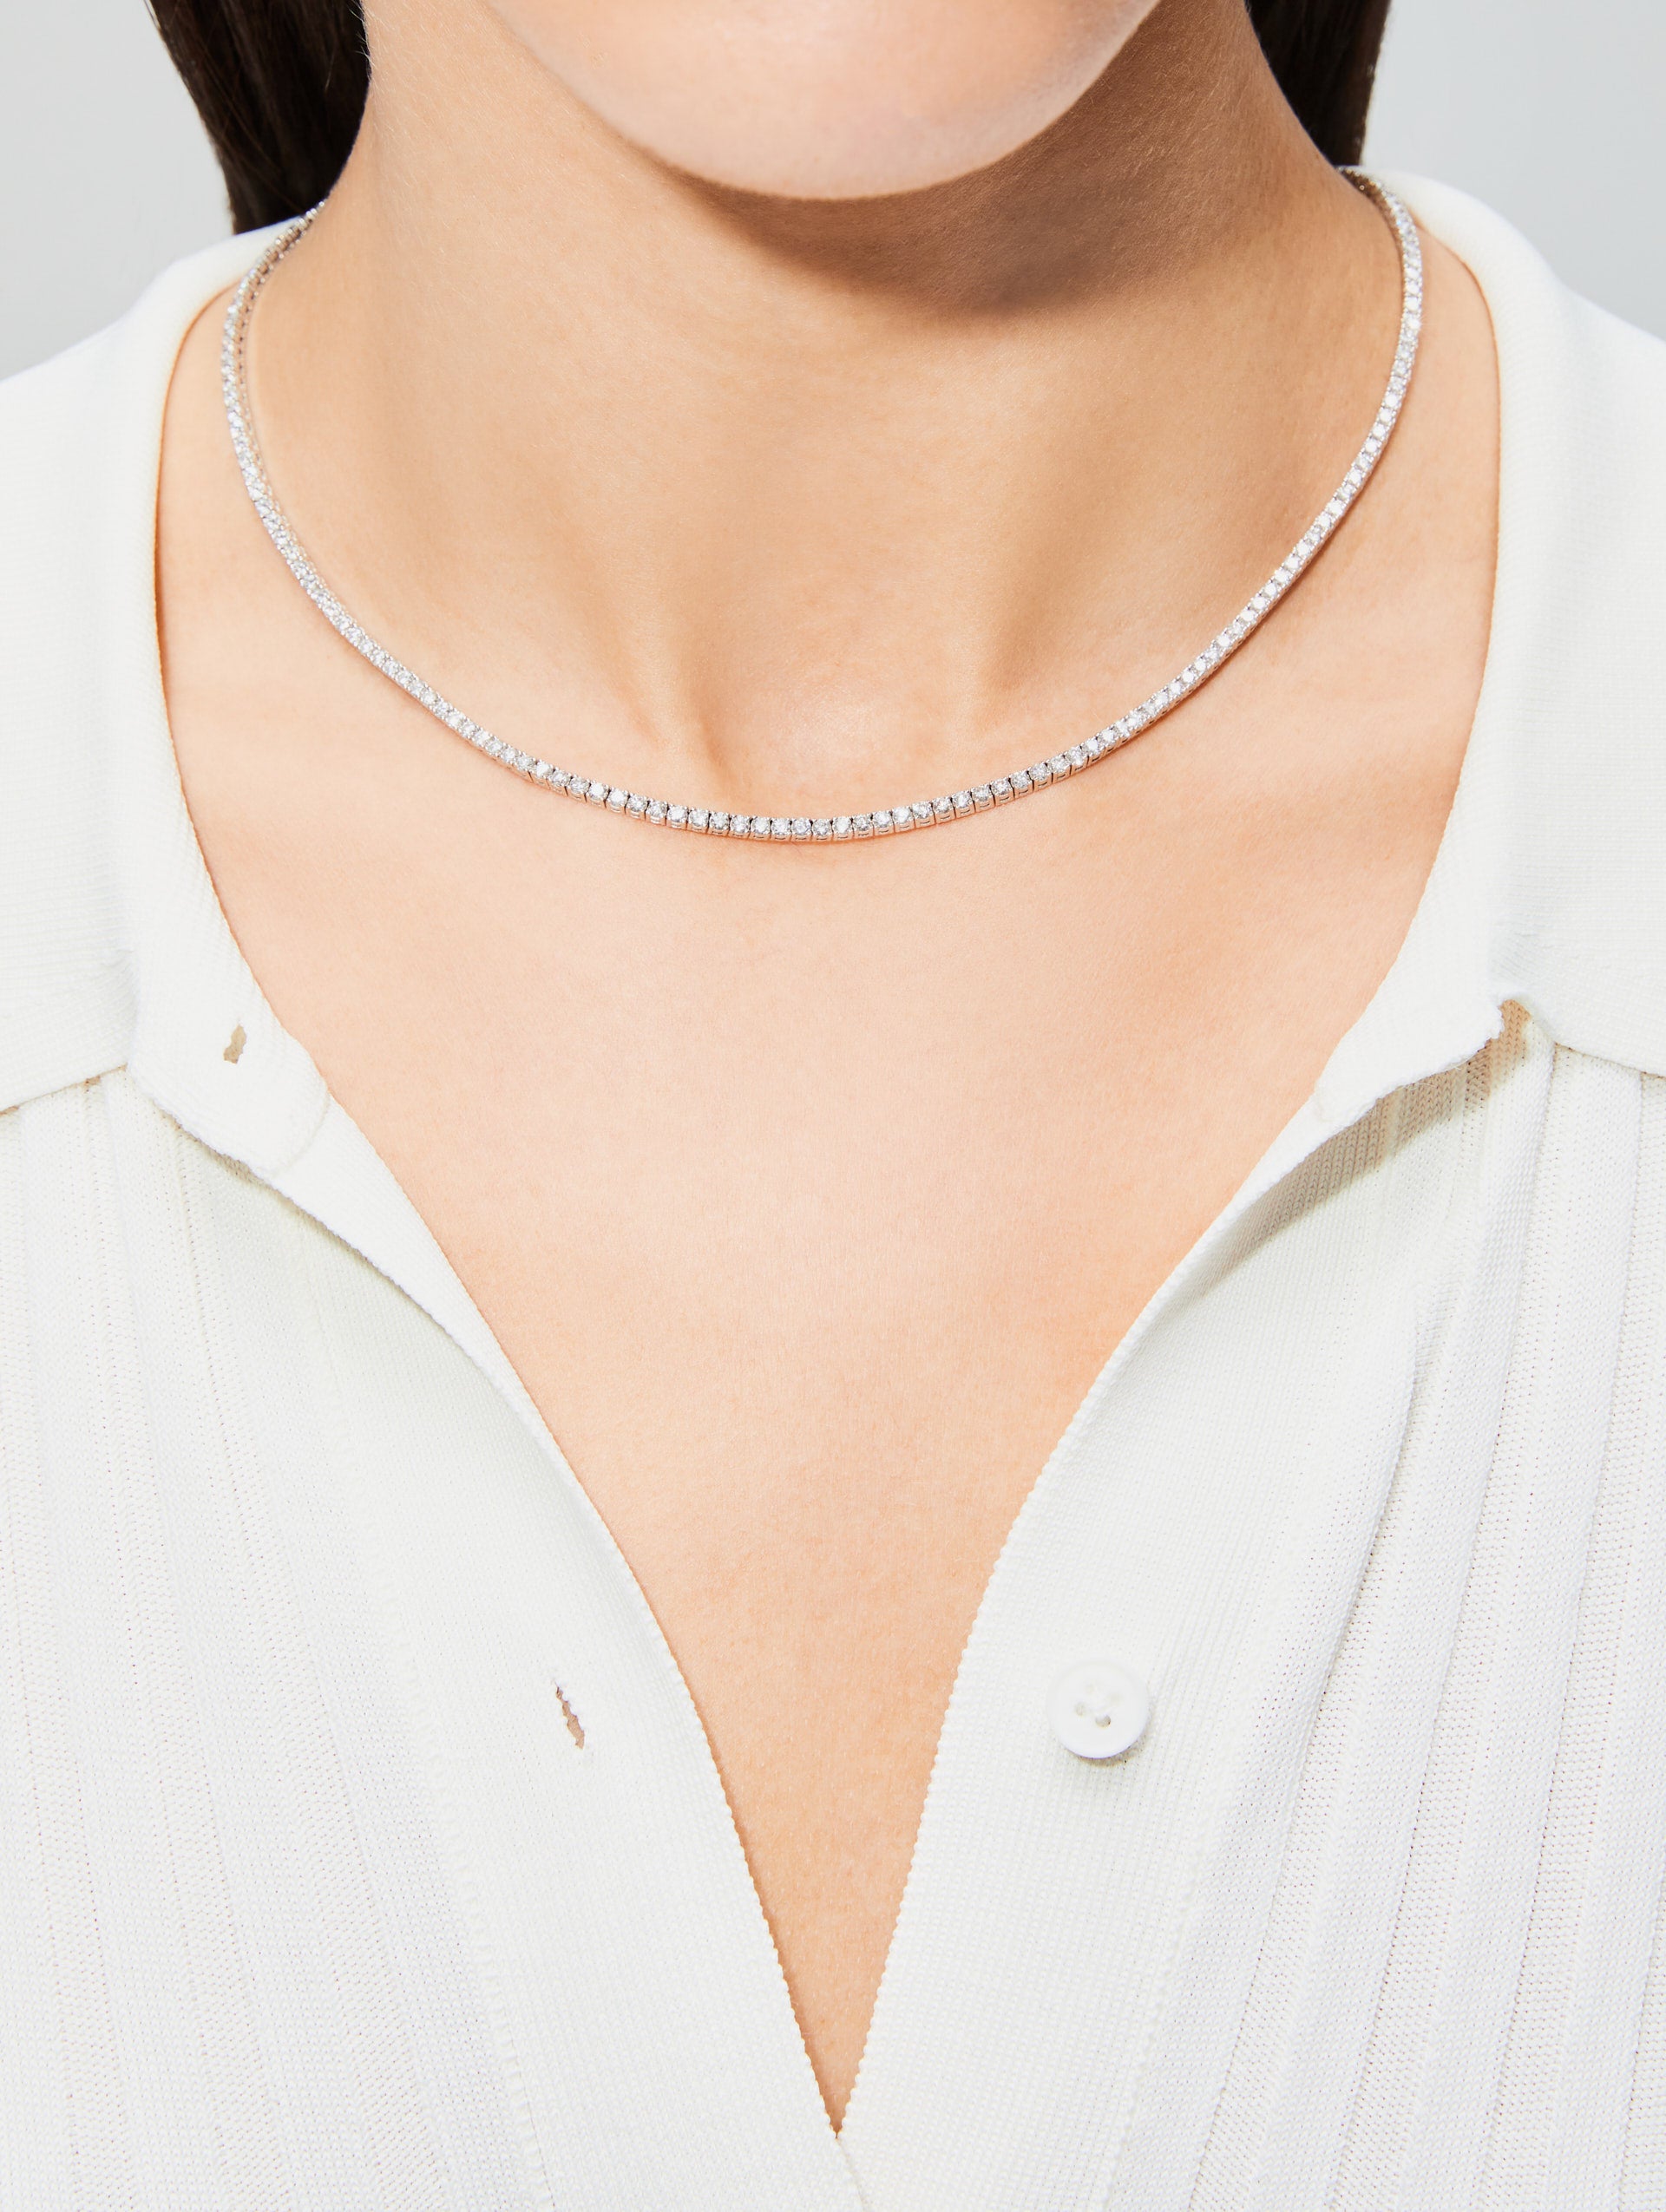 Blue Gradient Tennis Necklace | Princess Jewelry Shop